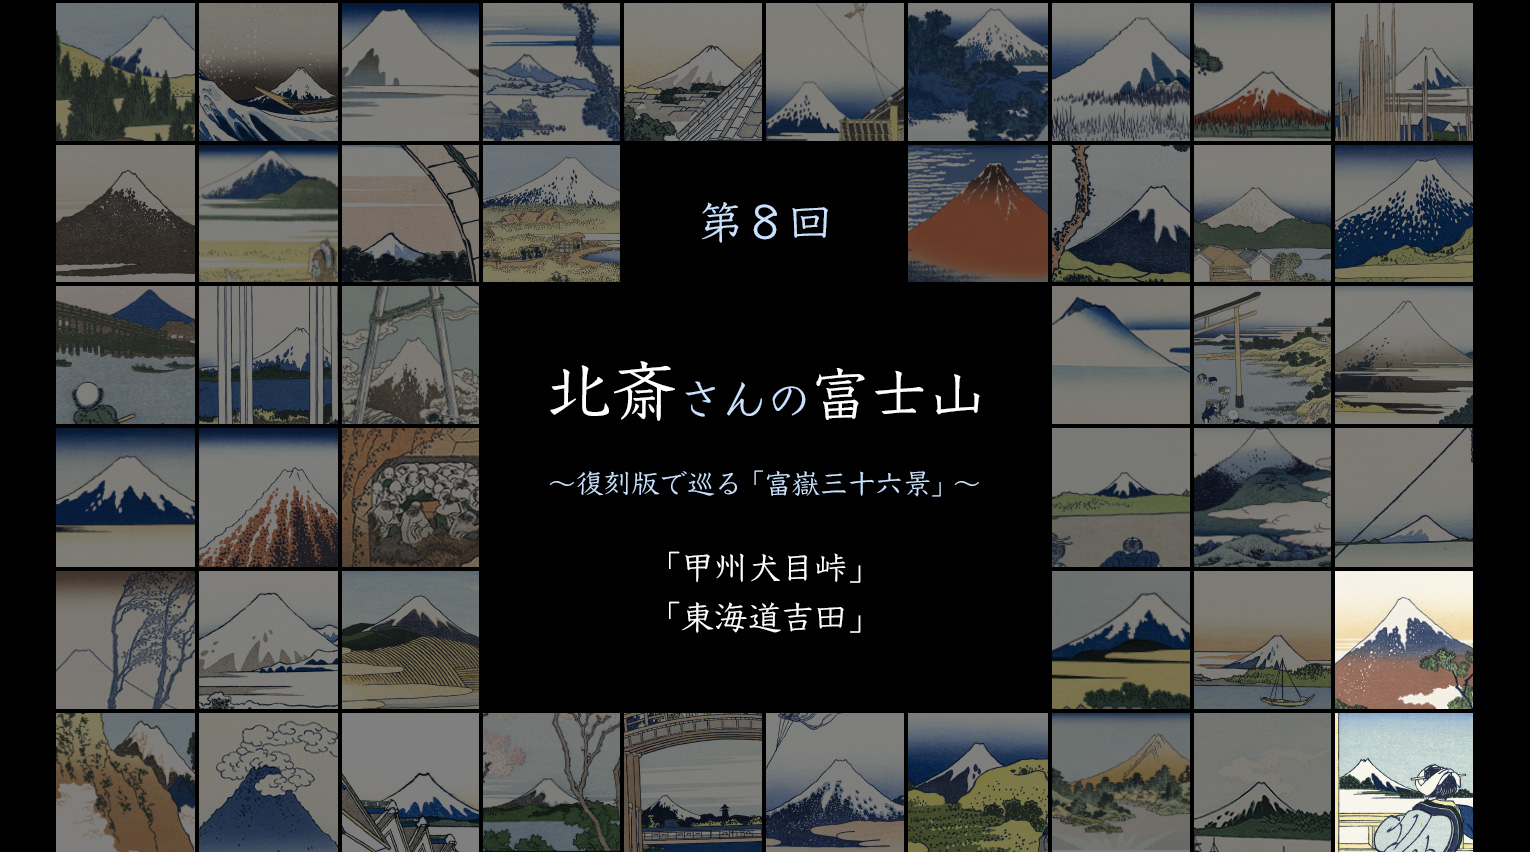 北斎さんの富士山 〜復刻版で巡る「富嶽三十六景」〜 (8)【PR】